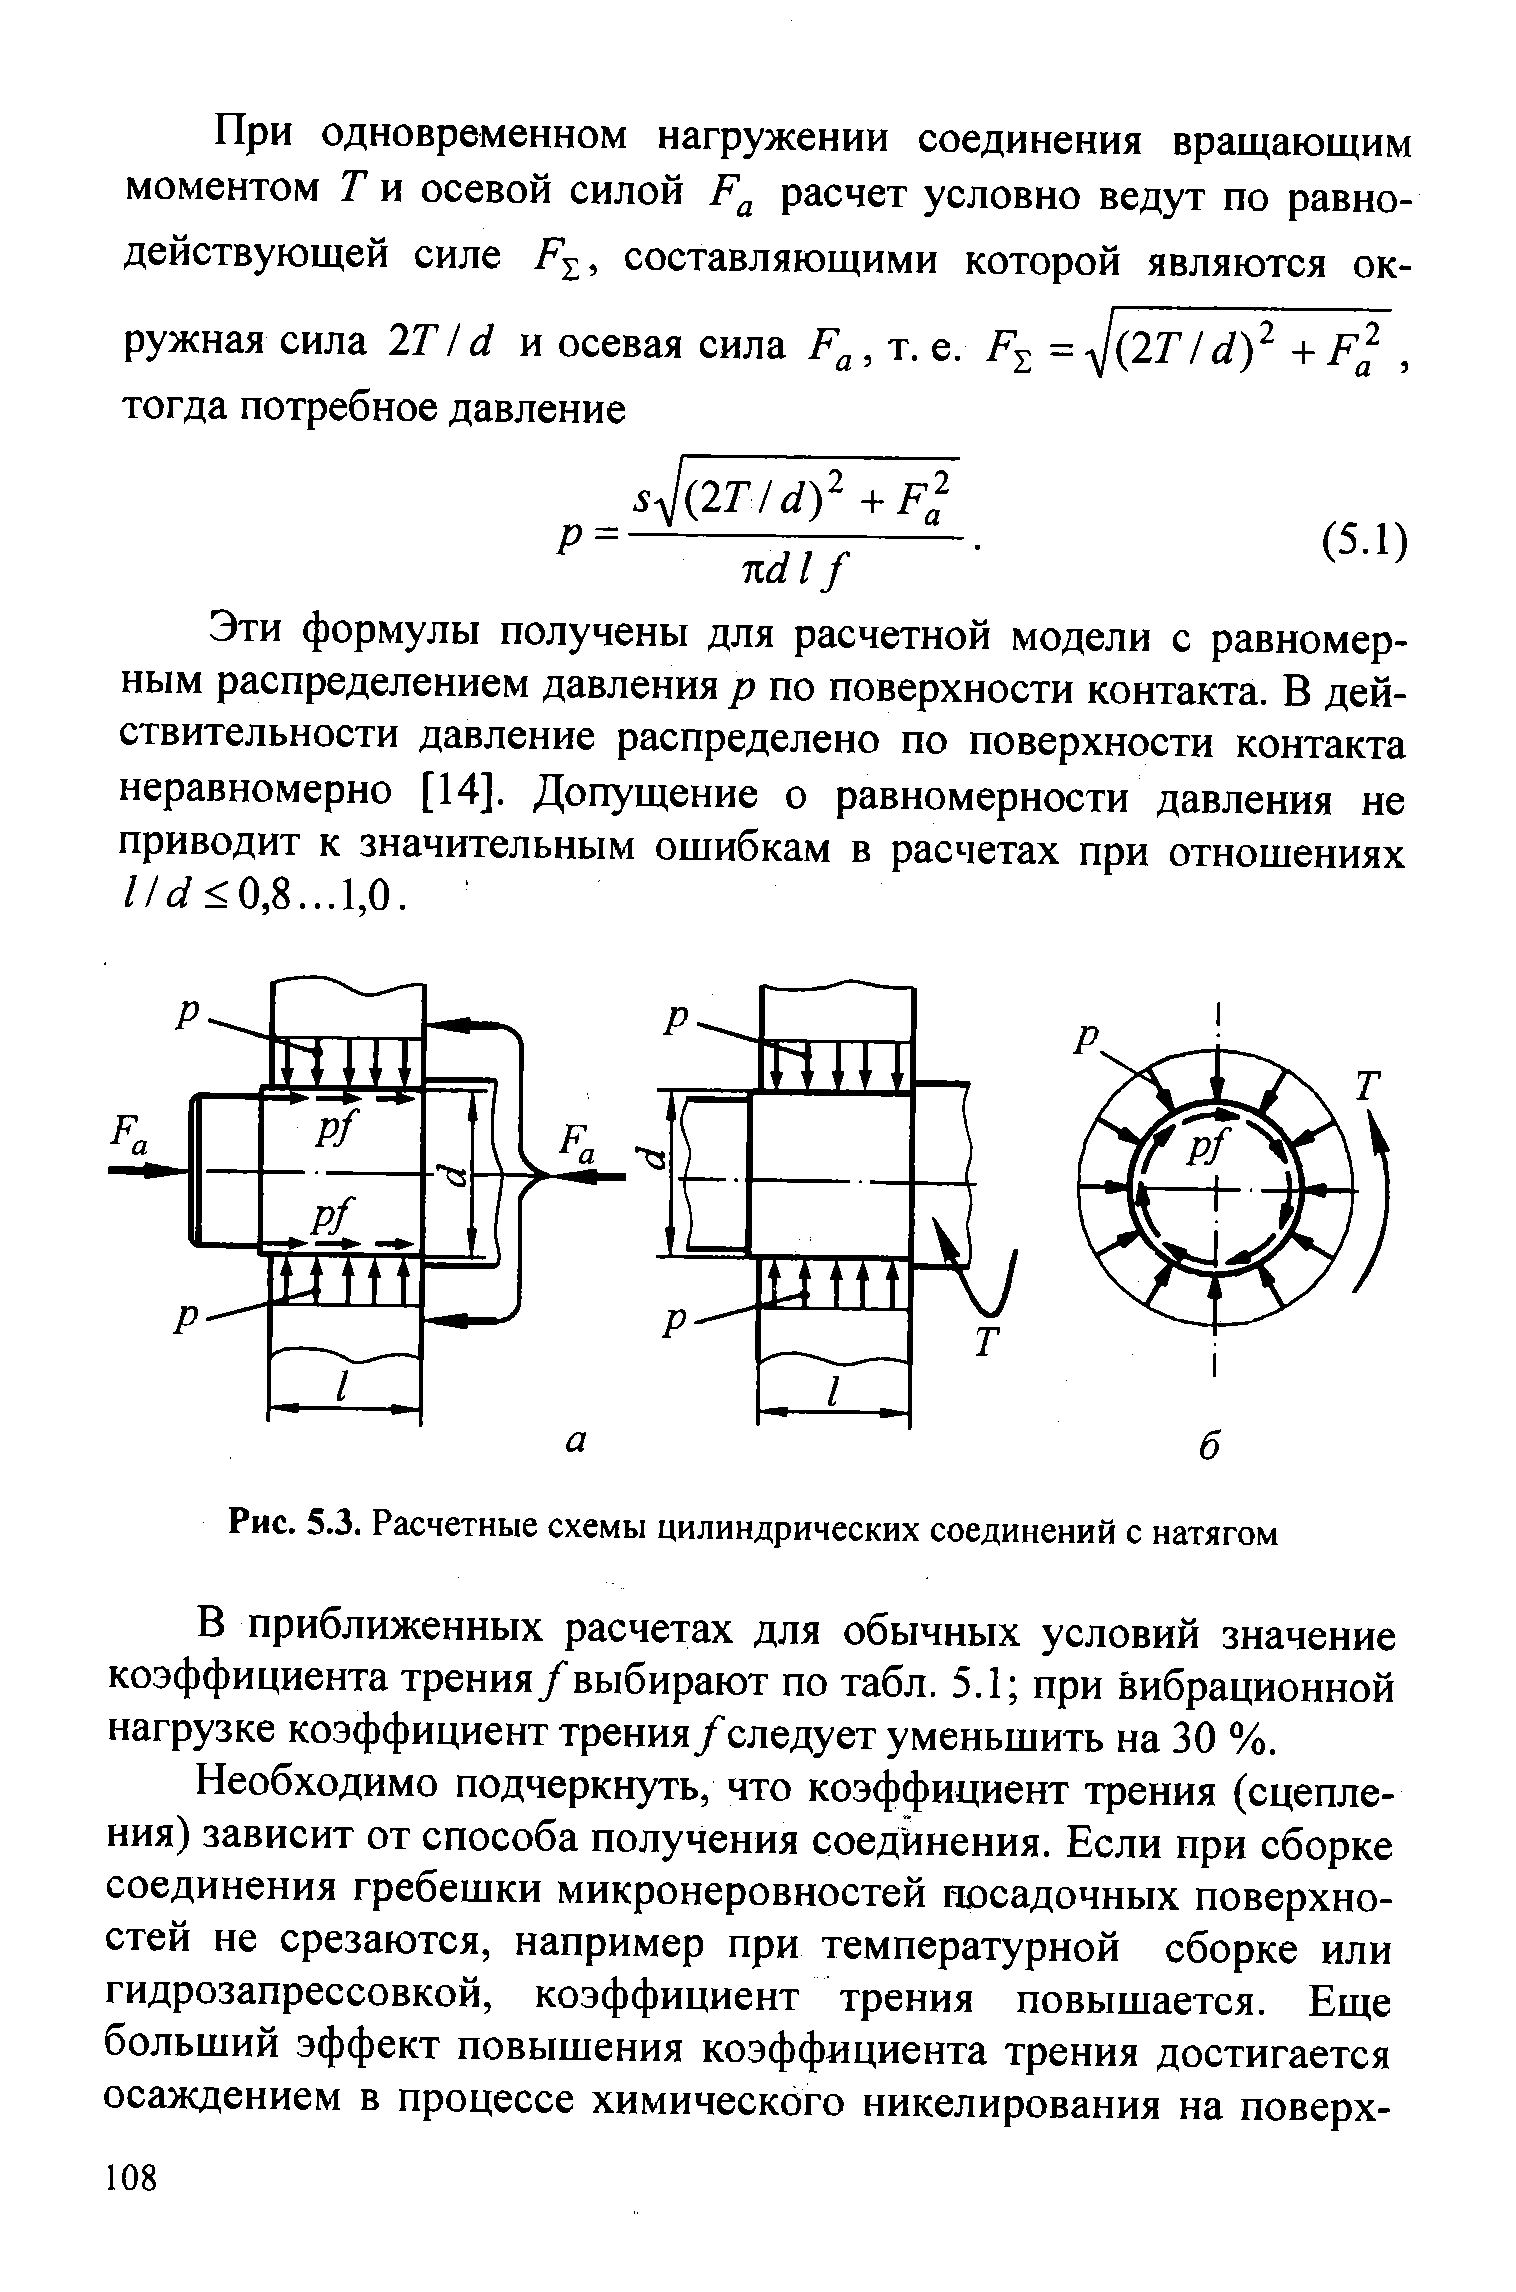 Рис. 5.3. Расчетные схемы цилиндрических соединений с натягом
